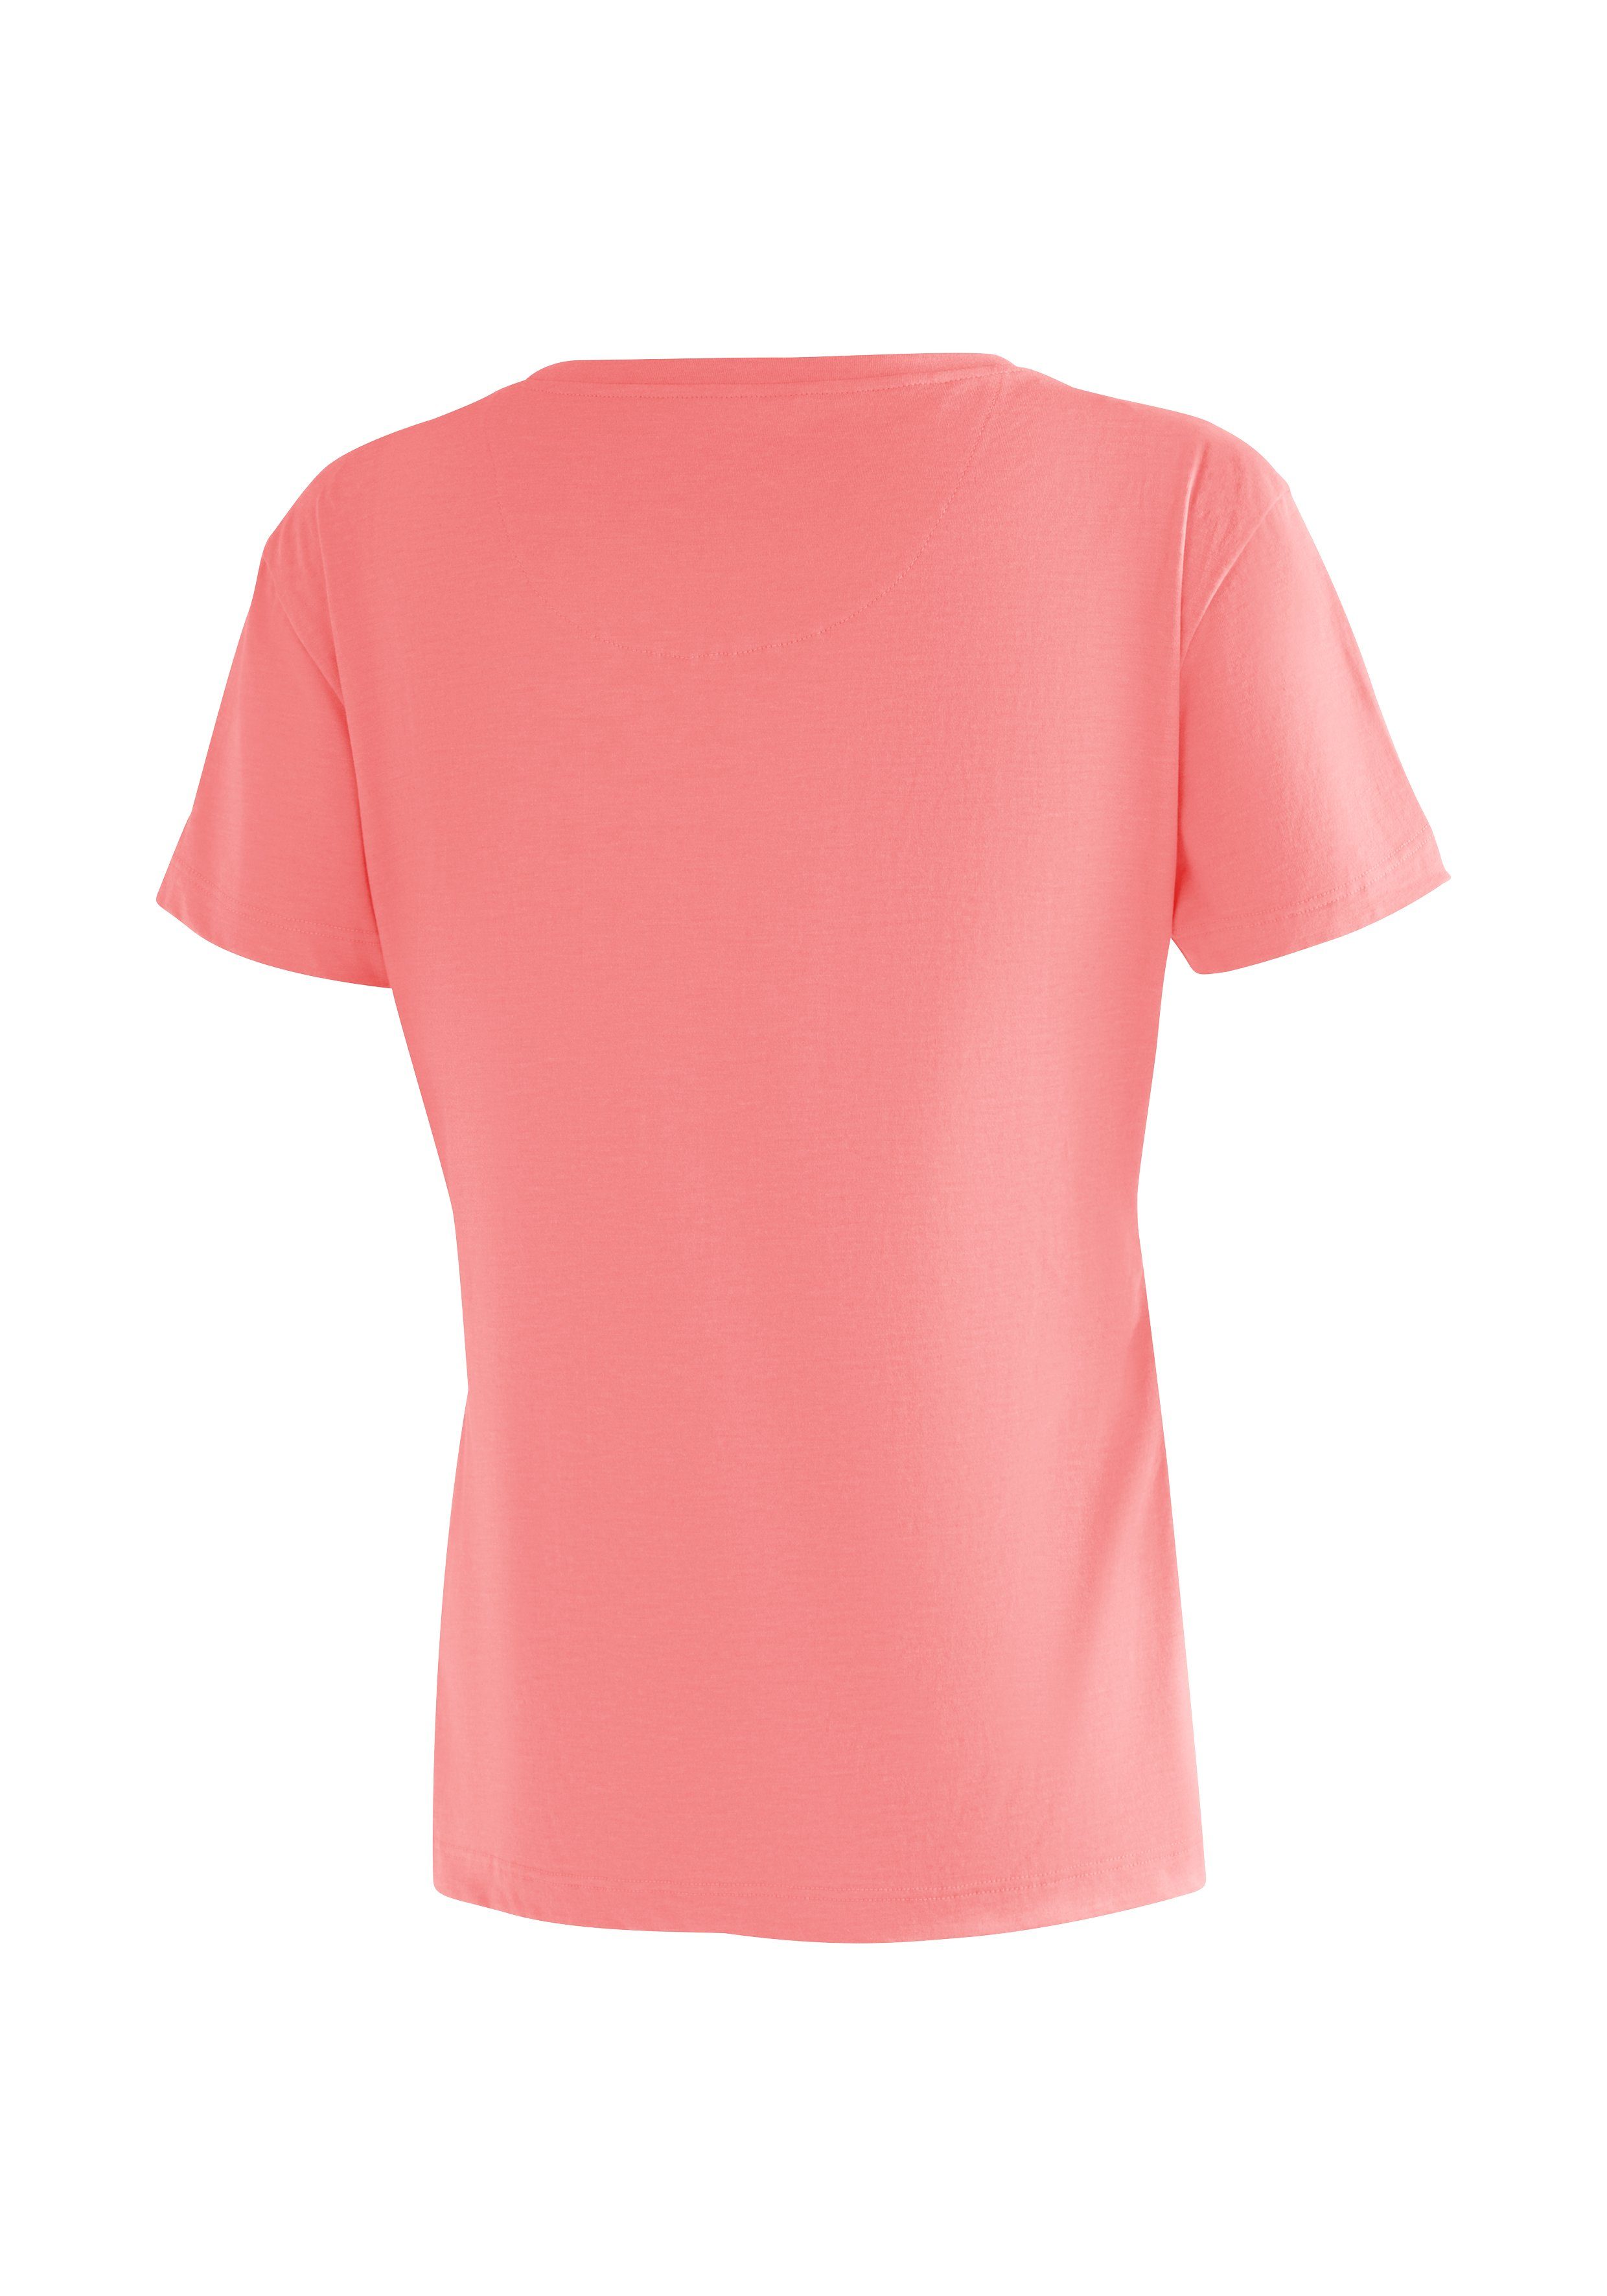 W perlrosa Print T-Shirt Damen Maier für Sports Freizeit Phonetic mit Tee Kurzarmshirt und Wandern